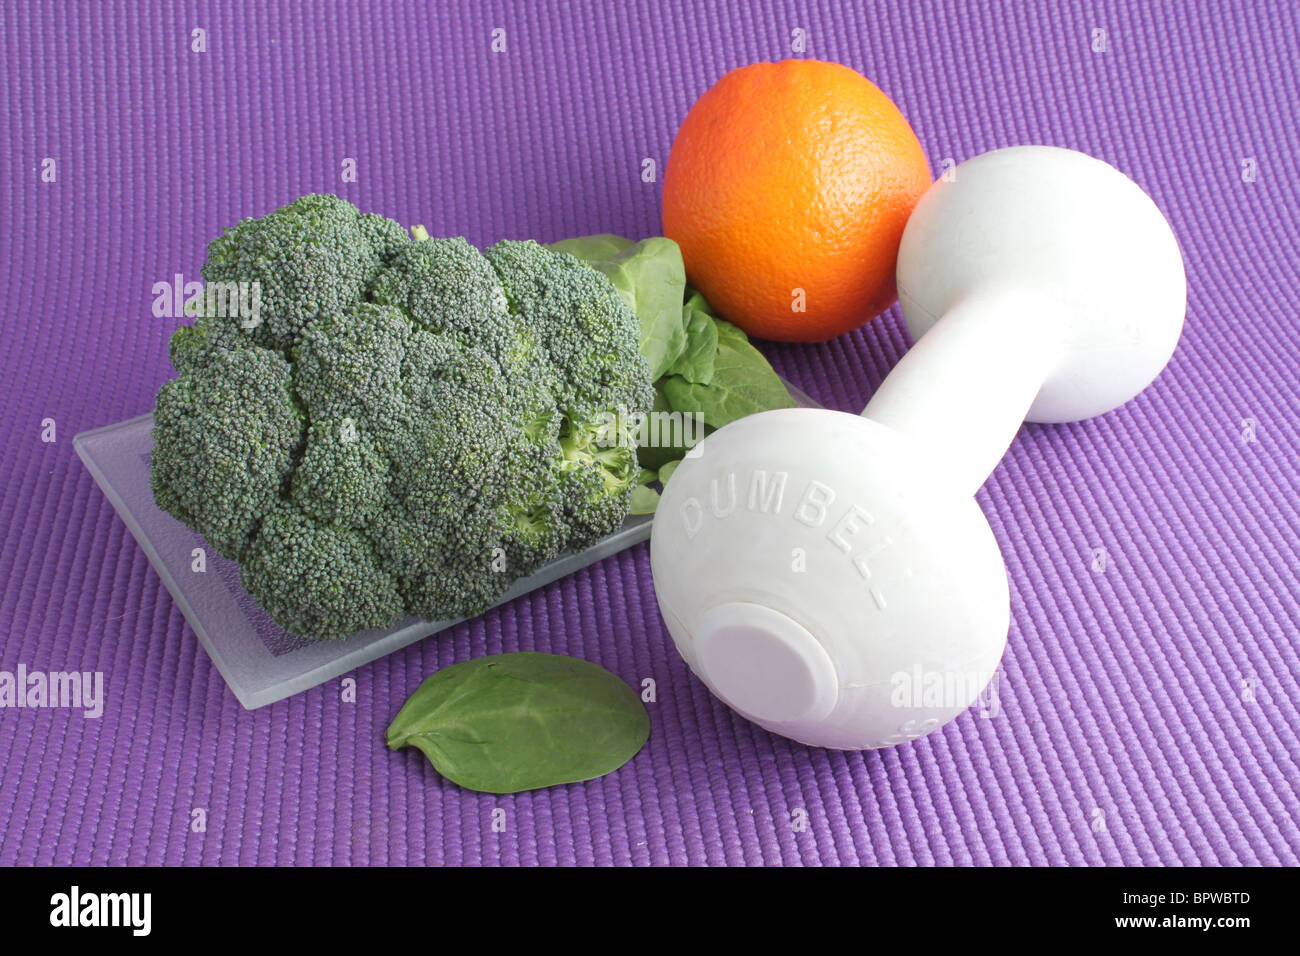 Les éléments nécessaires à une bonne hygiène de vie, équipement de gym et d'aliments sains comme les fruits et légumes Banque D'Images